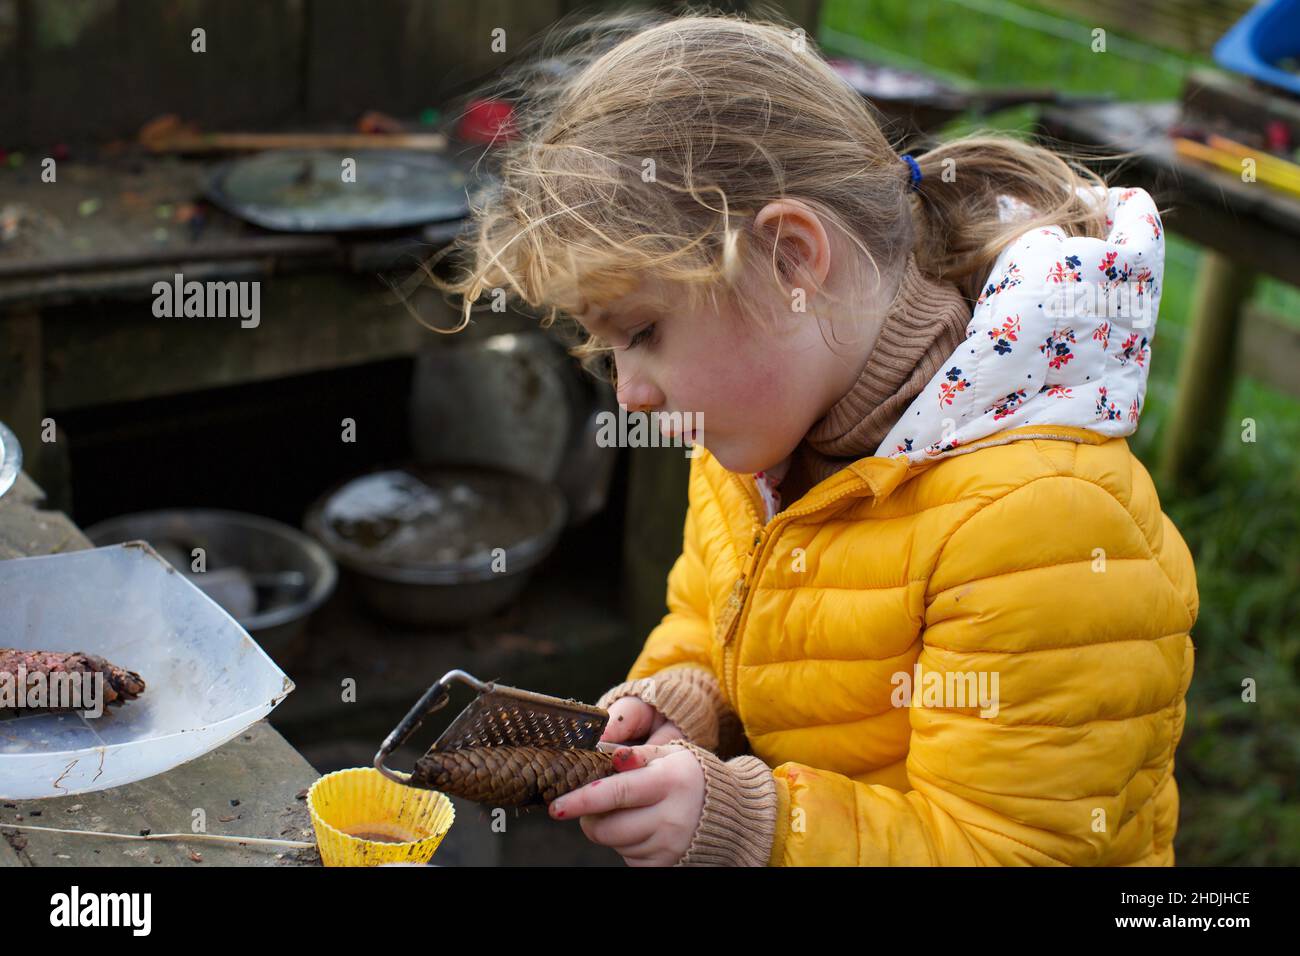 Un enfant de 5 ans jouant à l'extérieur dans une cuisine de boue, Royaume-Uni Banque D'Images